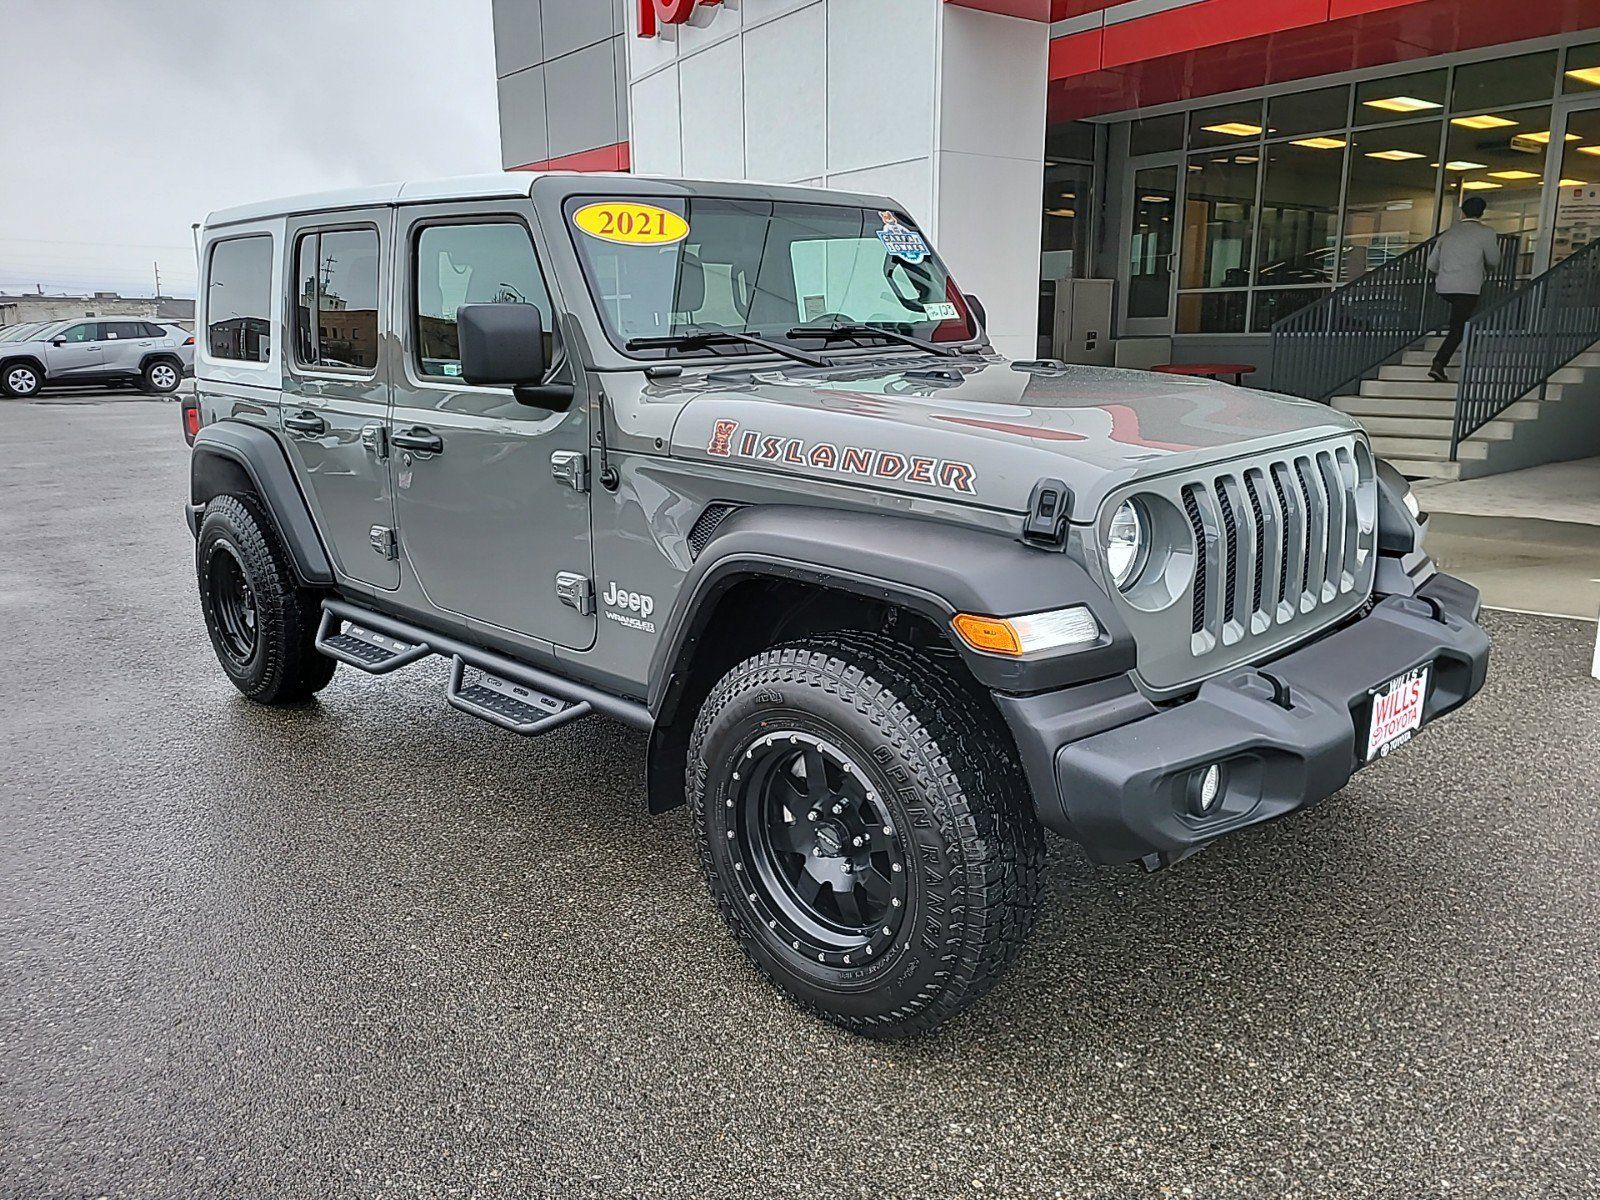 2021 - Jeep - Wrangler - $34,788